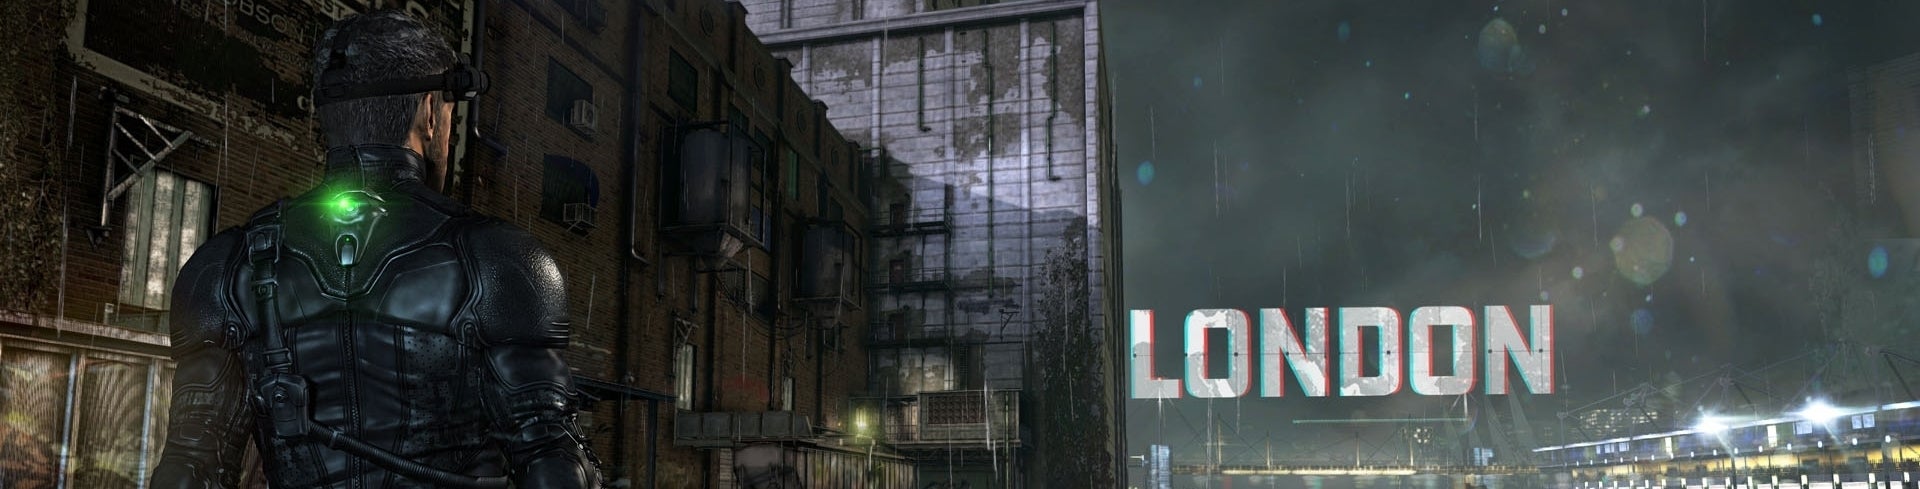 Imagem para Splinter Cell: Blacklist - Wii U - Análise